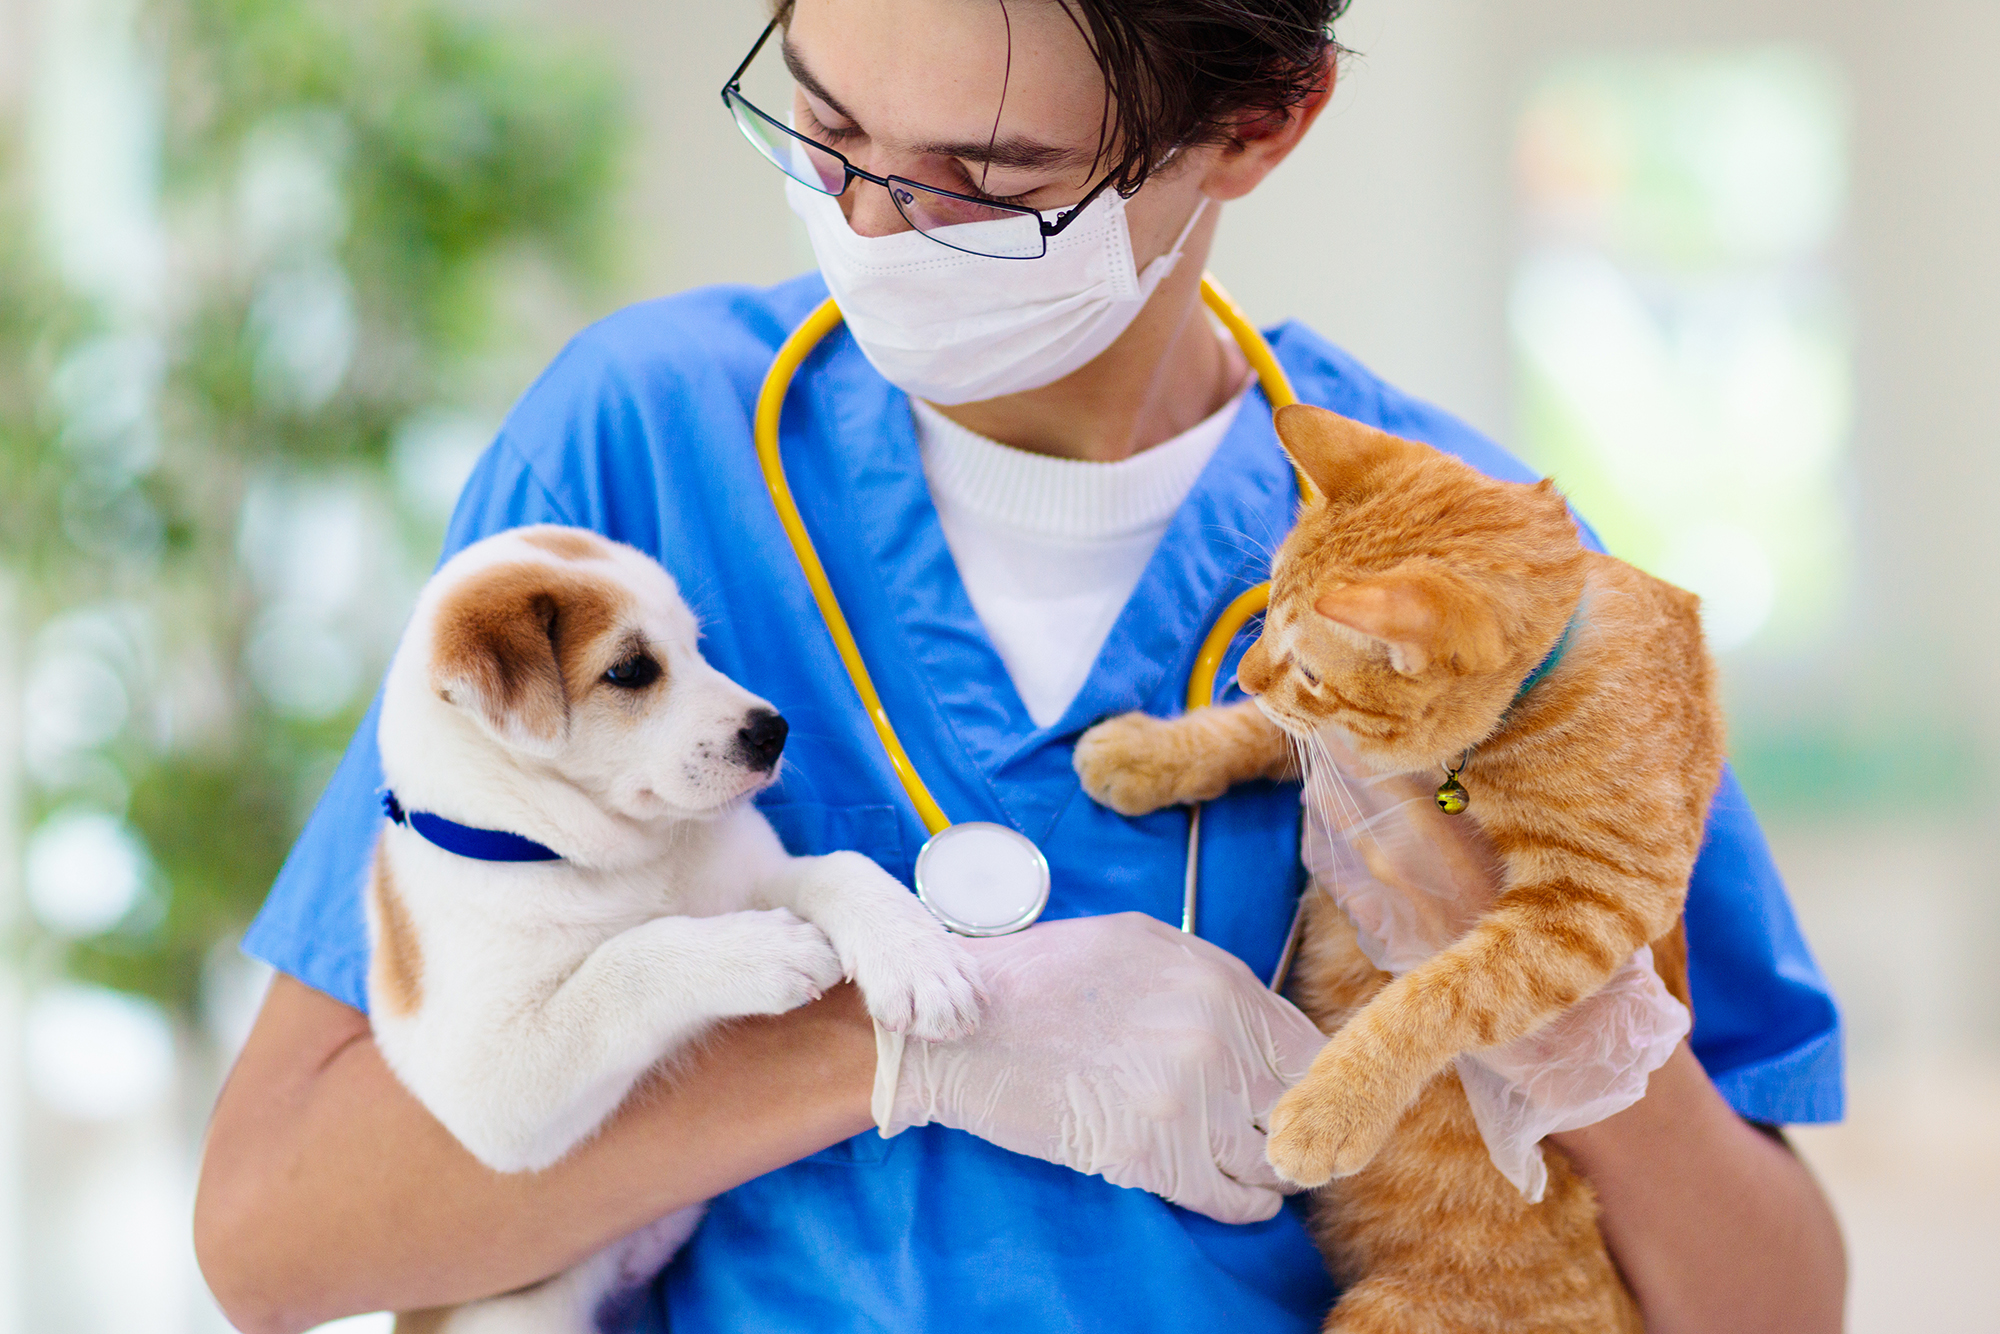 Procedimientos de emergencia y cuidado crítico en perros y gatos